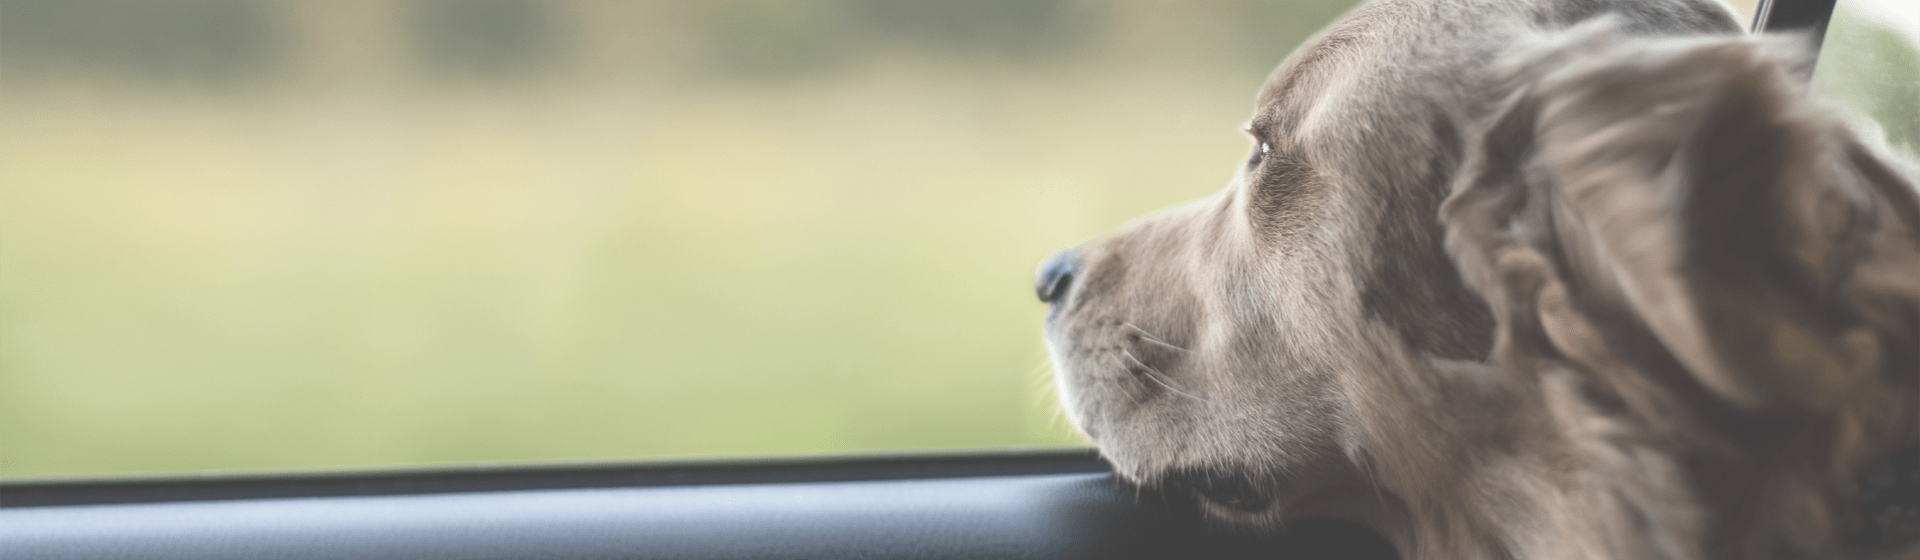 Tier im heißen Auto: Wann darf ich die Scheibe einschlagen?